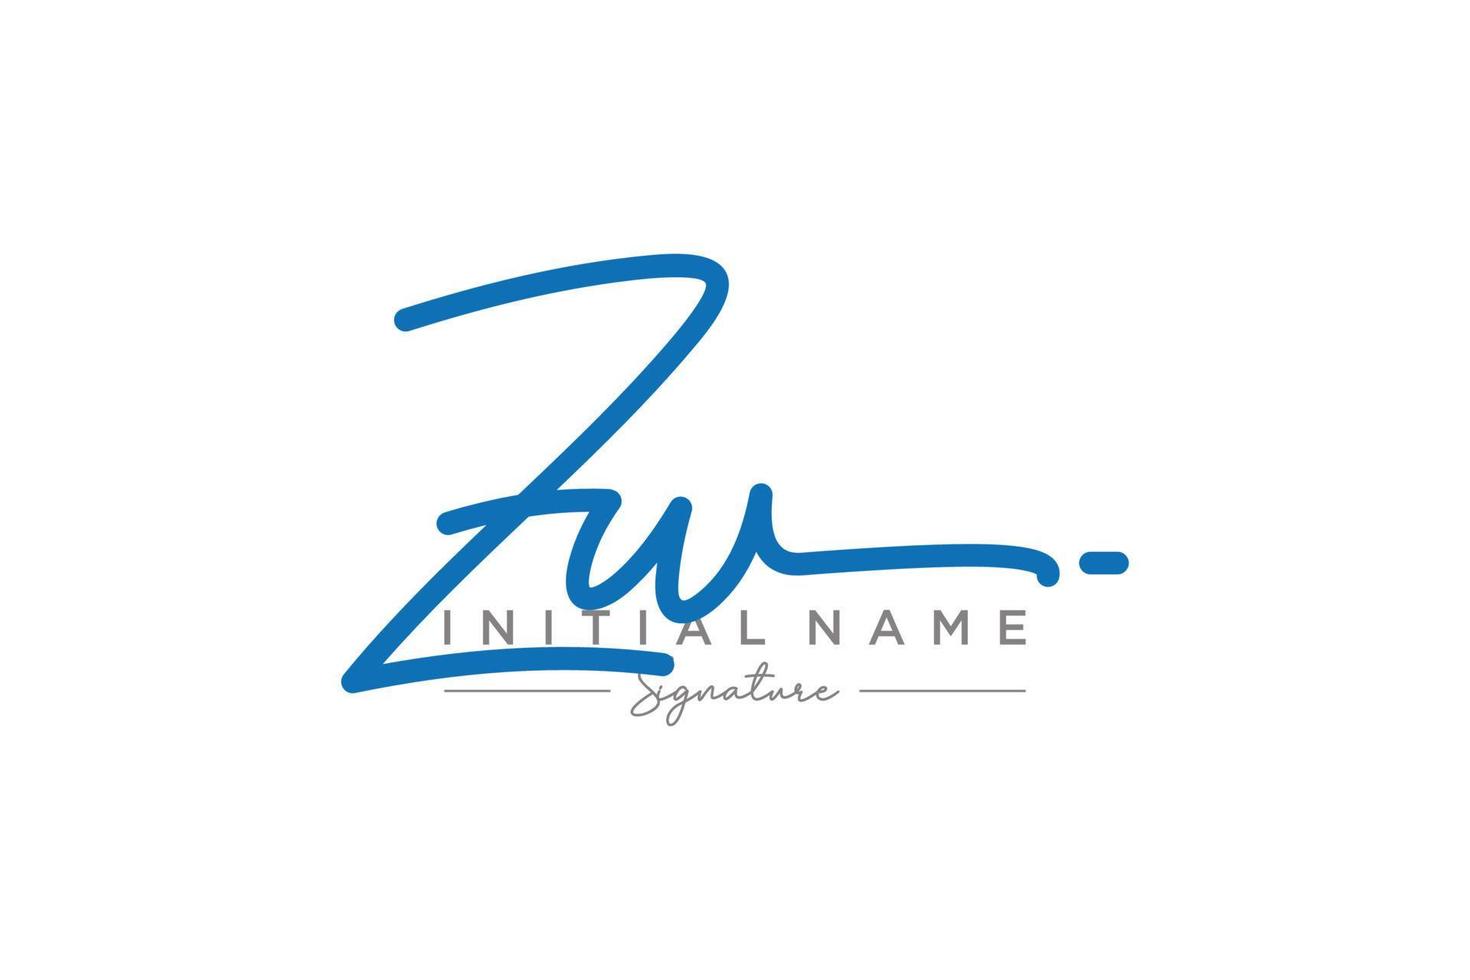 vector de plantilla de logotipo de firma zw inicial. ilustración de vector de letras de caligrafía dibujada a mano.